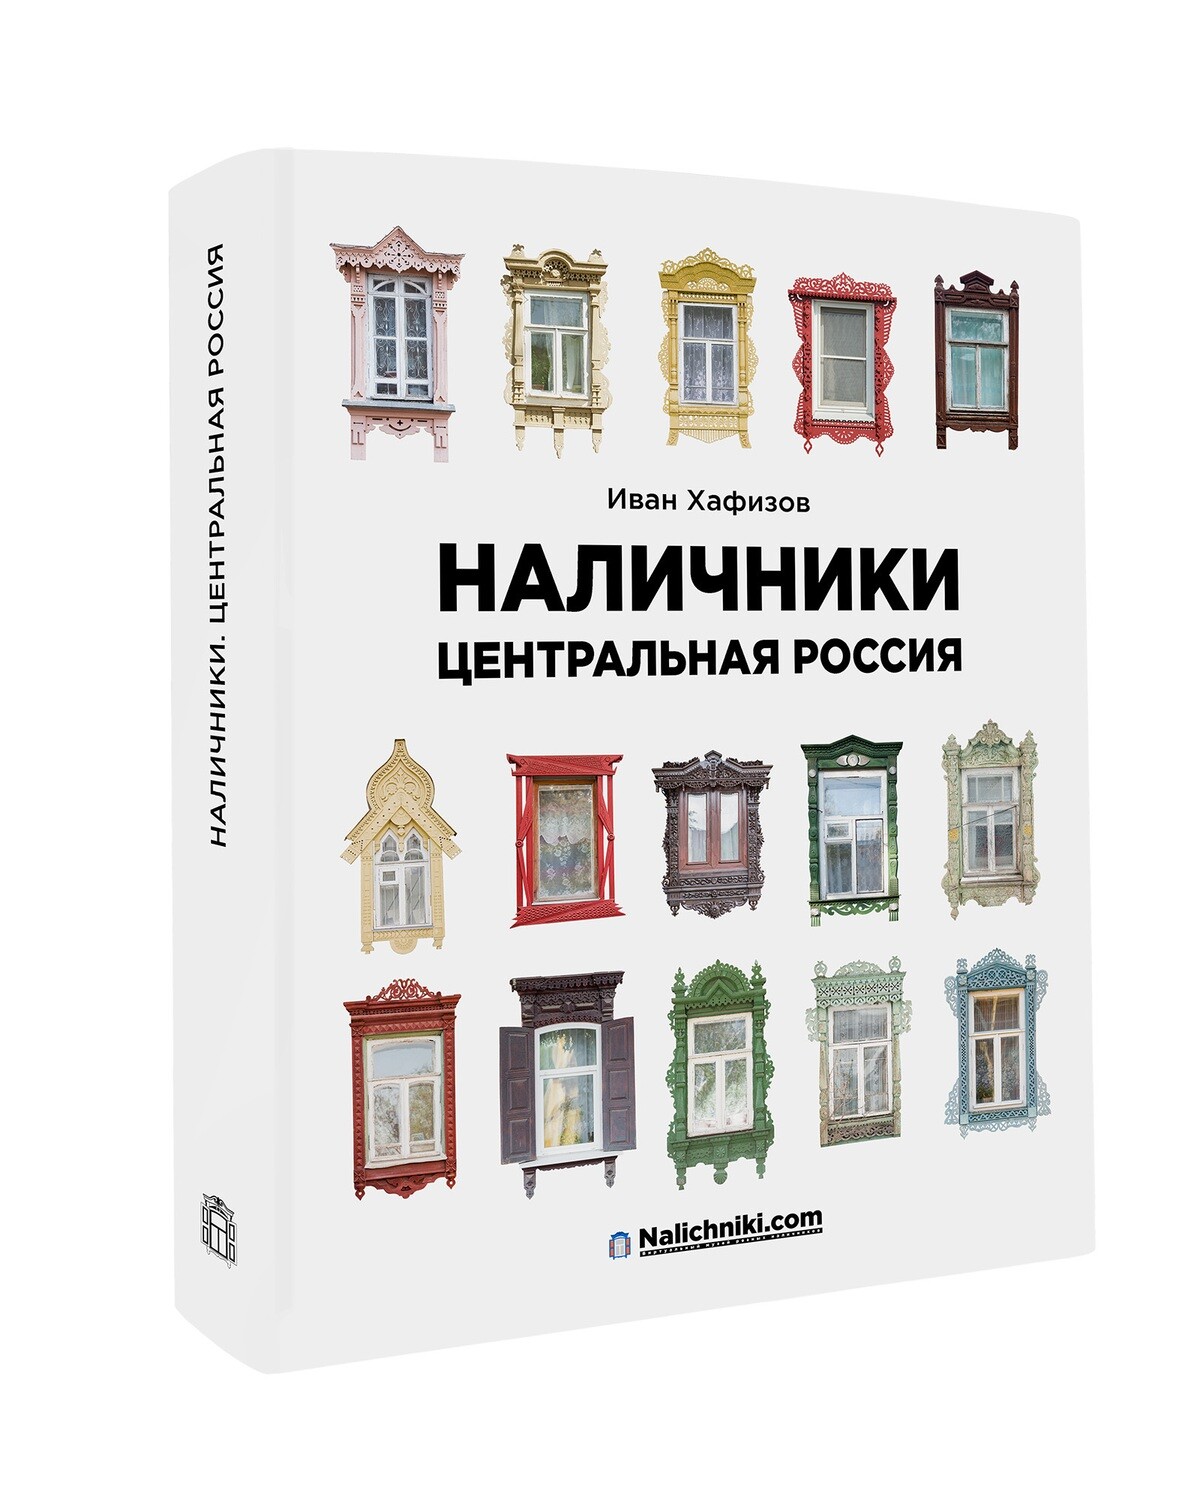 Книга «Наличники: Центральная Россия».